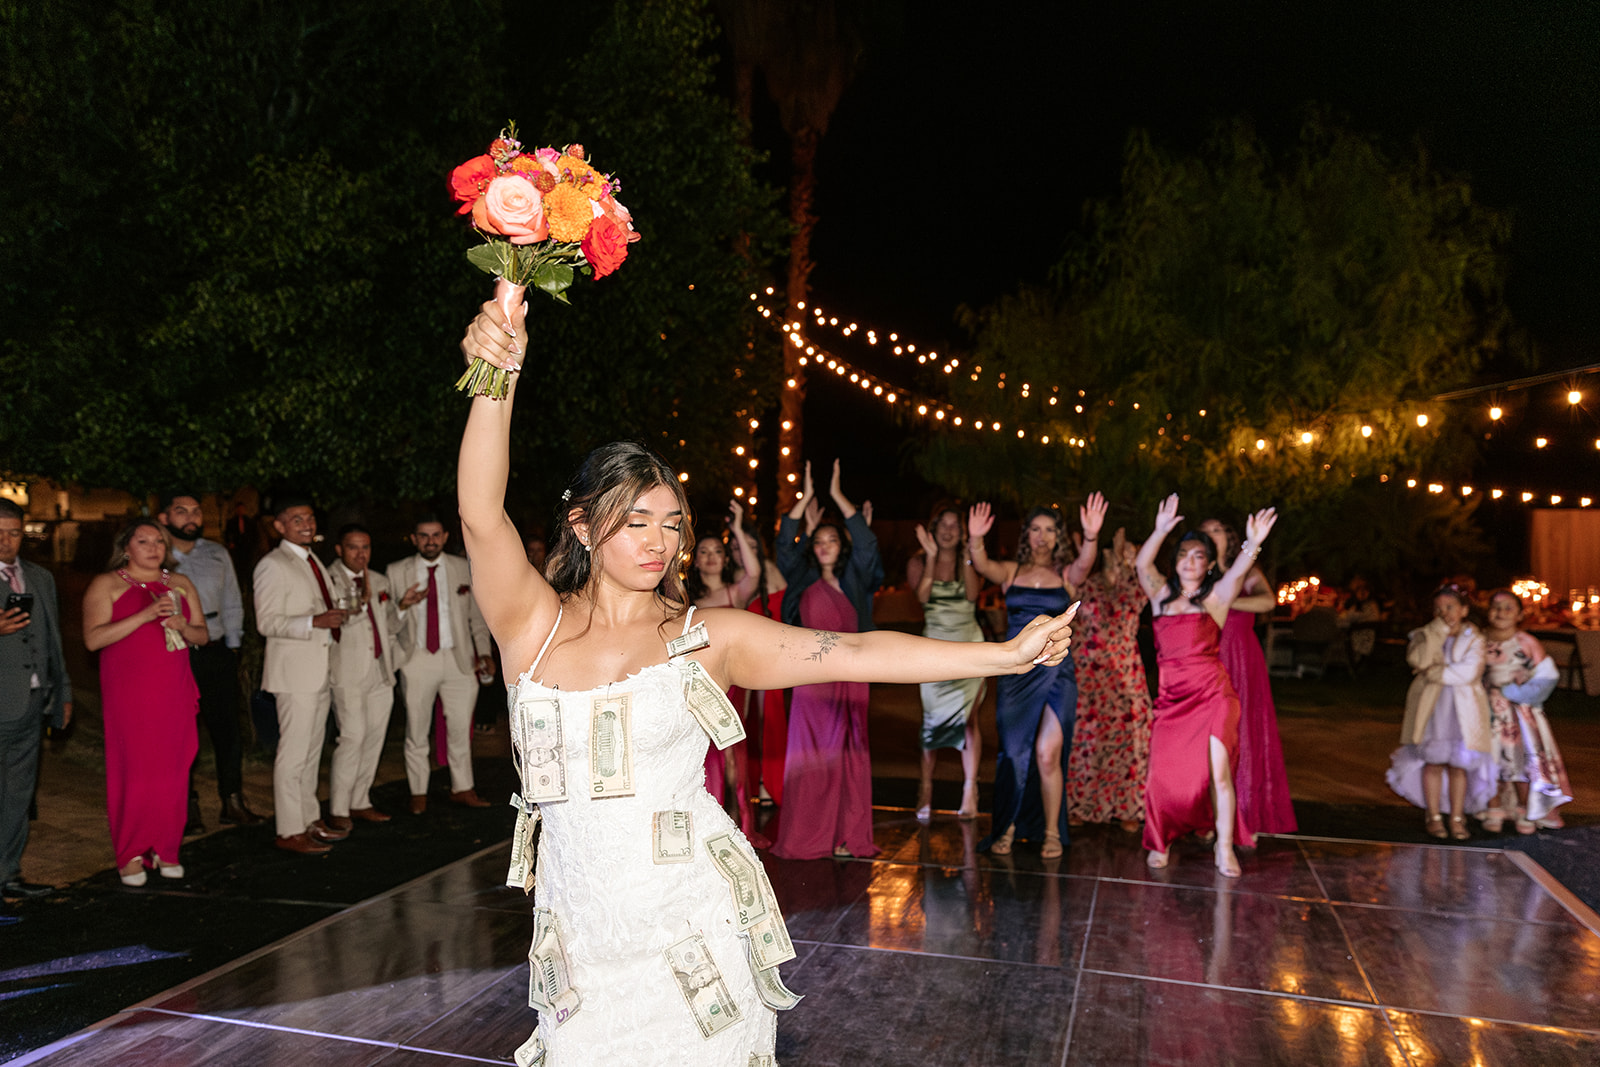 sacramento california backlyard wedding norcal fun wedding party photographer pictures money giving bride and groom